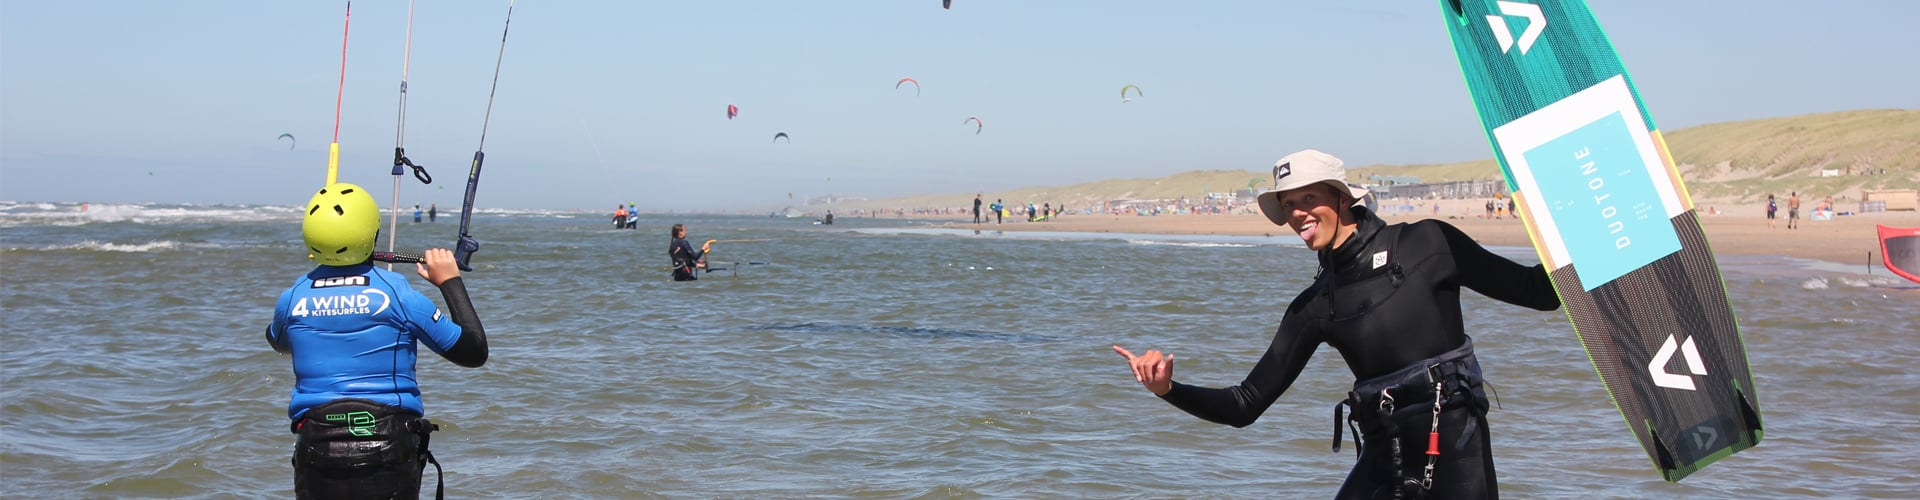 kitesurfles bij de nummer 1 kitesurfschool van Nederland op de mooiste locatie leren kitesurfen